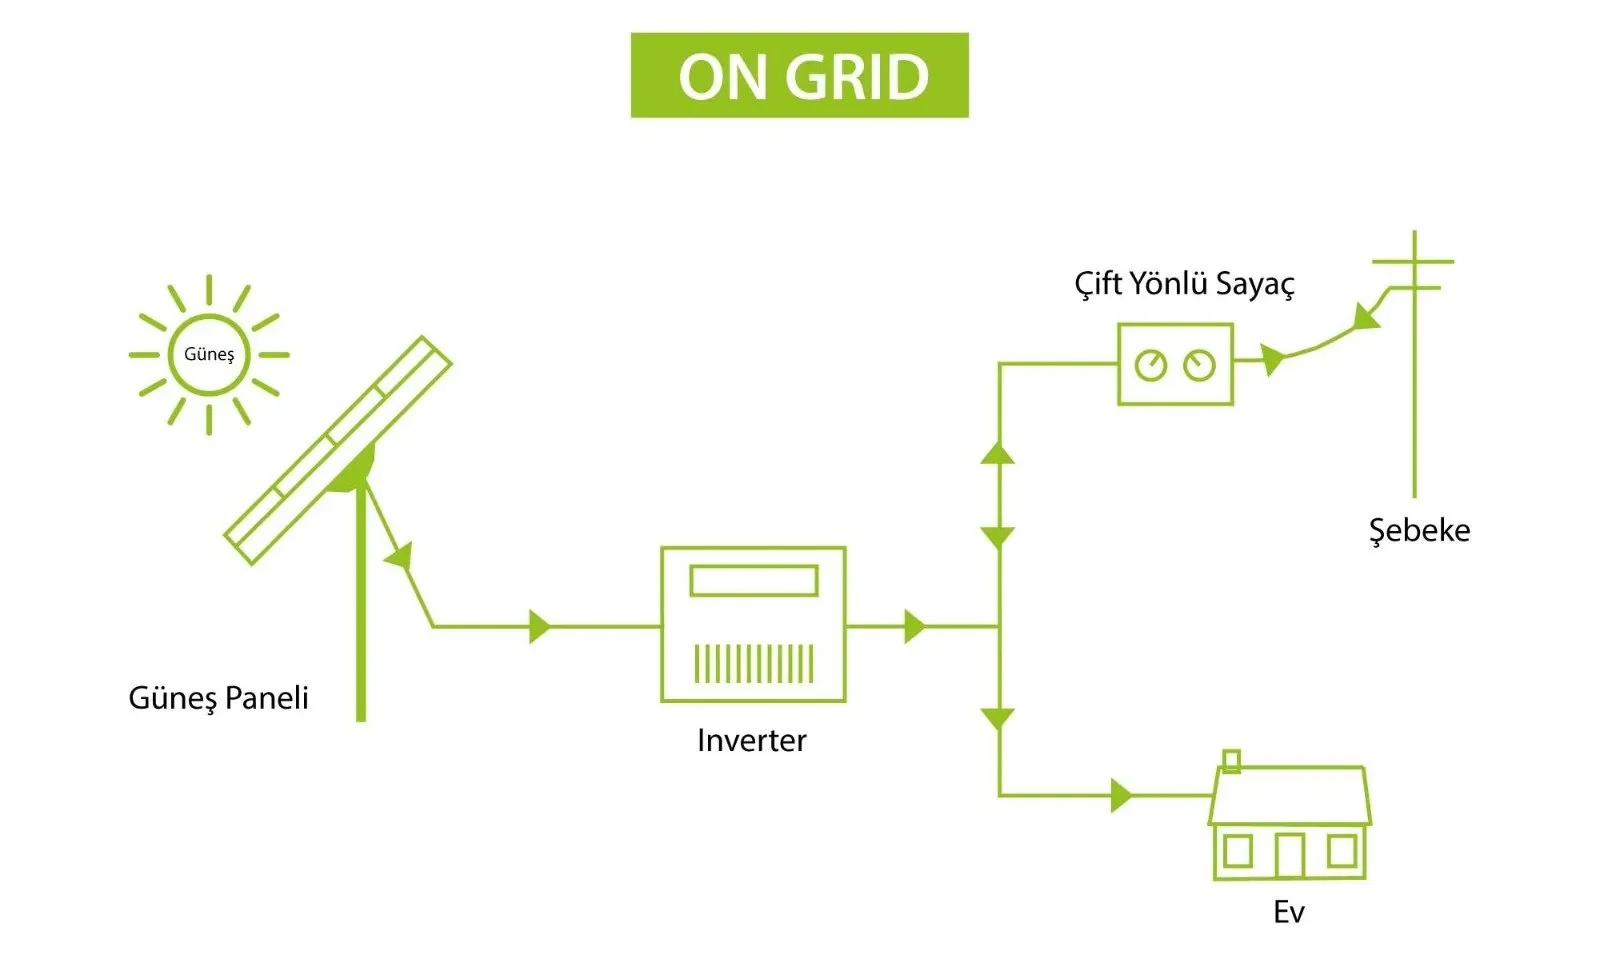 On grid şebekeye bağlı güneş enerji sistemi